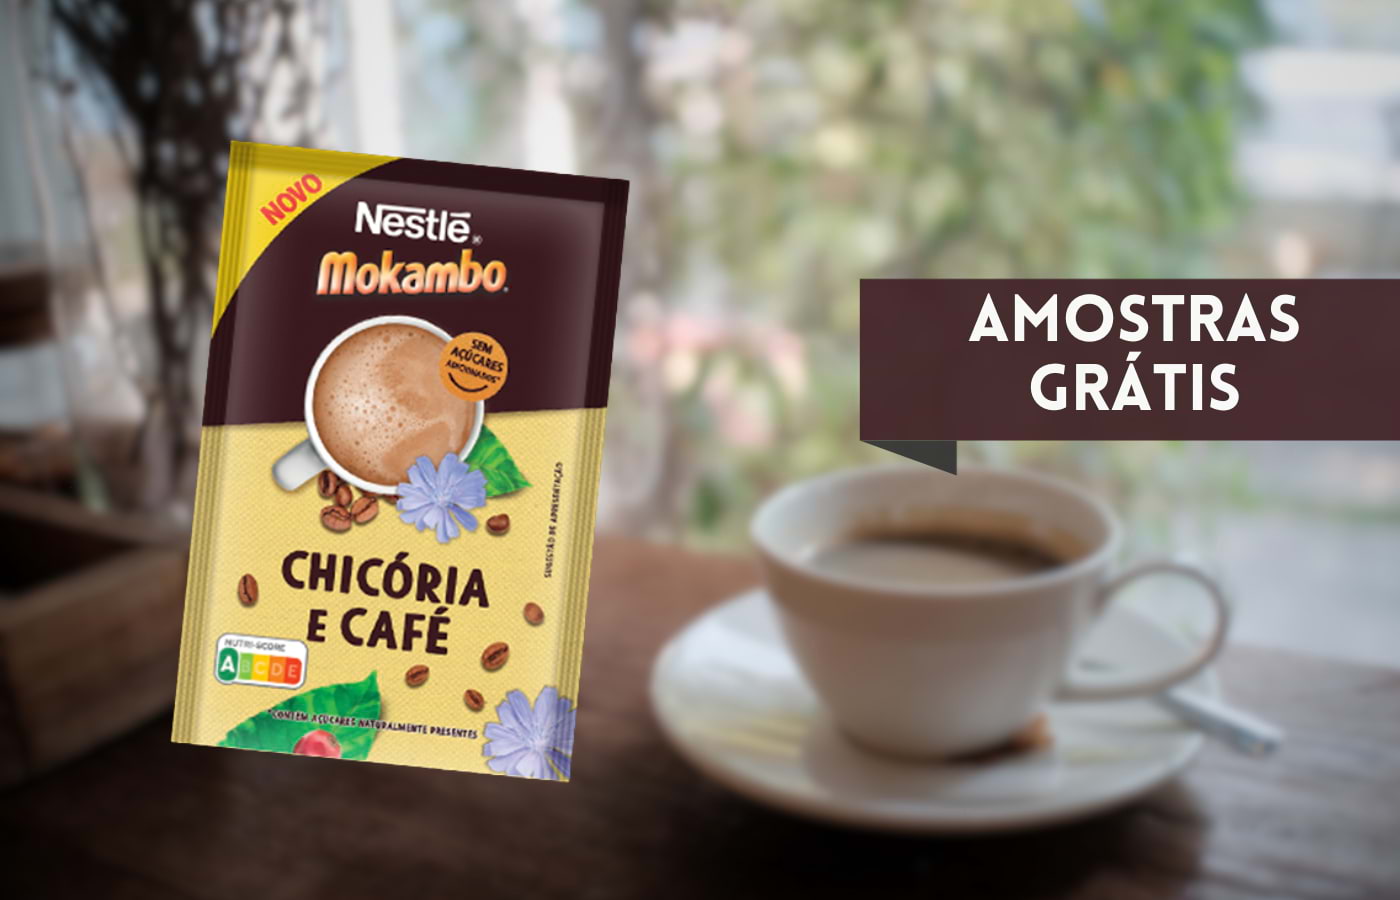 Amostras grátis de Mokambo Chicória e Café